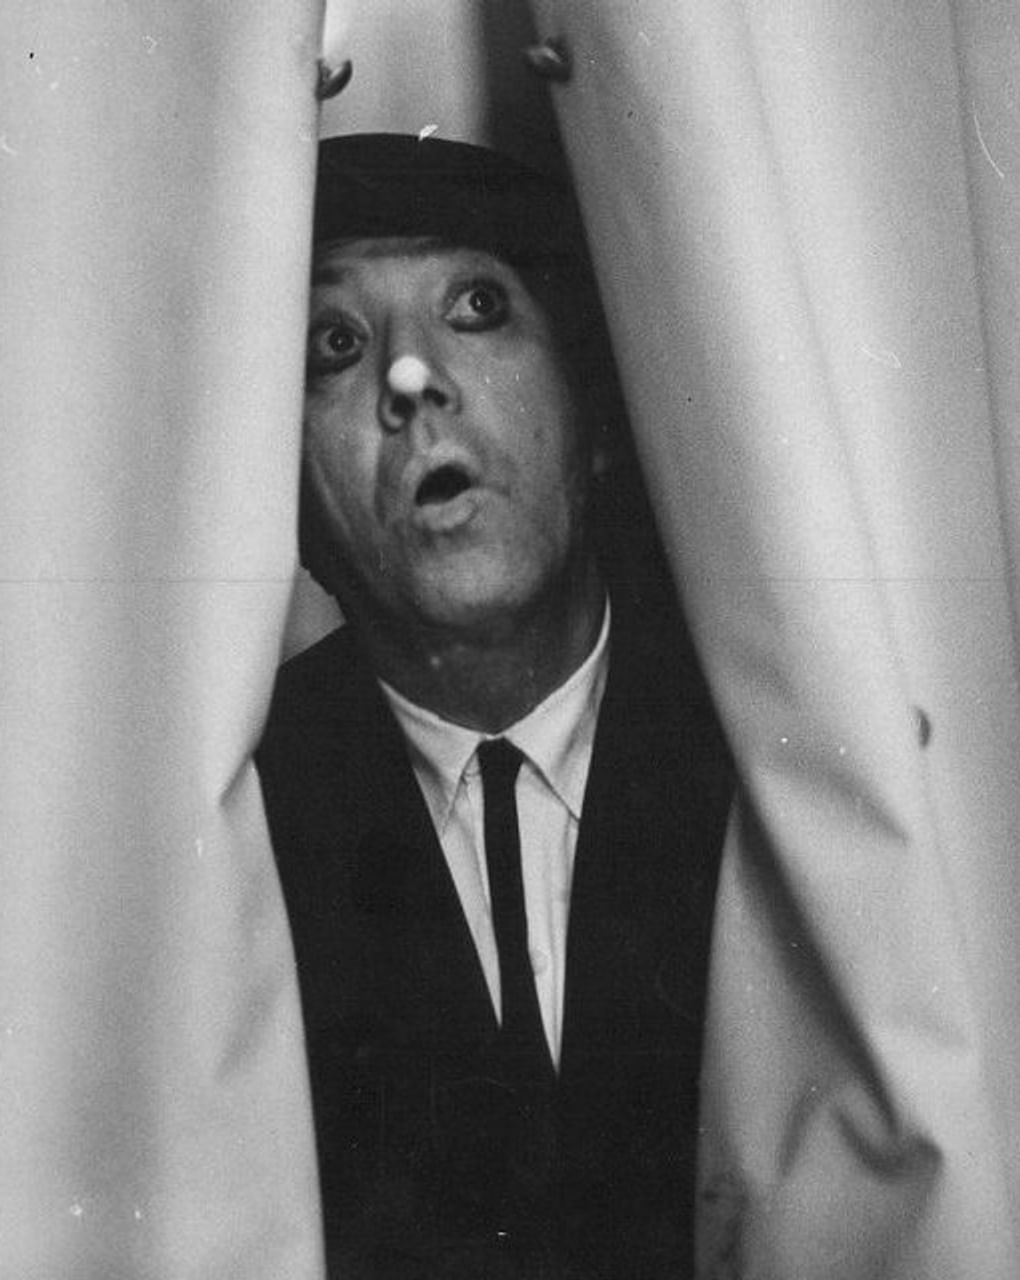 Юрий Никулин в цирке. 1960-е годы. Фотография: Государственный центральный музей кино, Москва